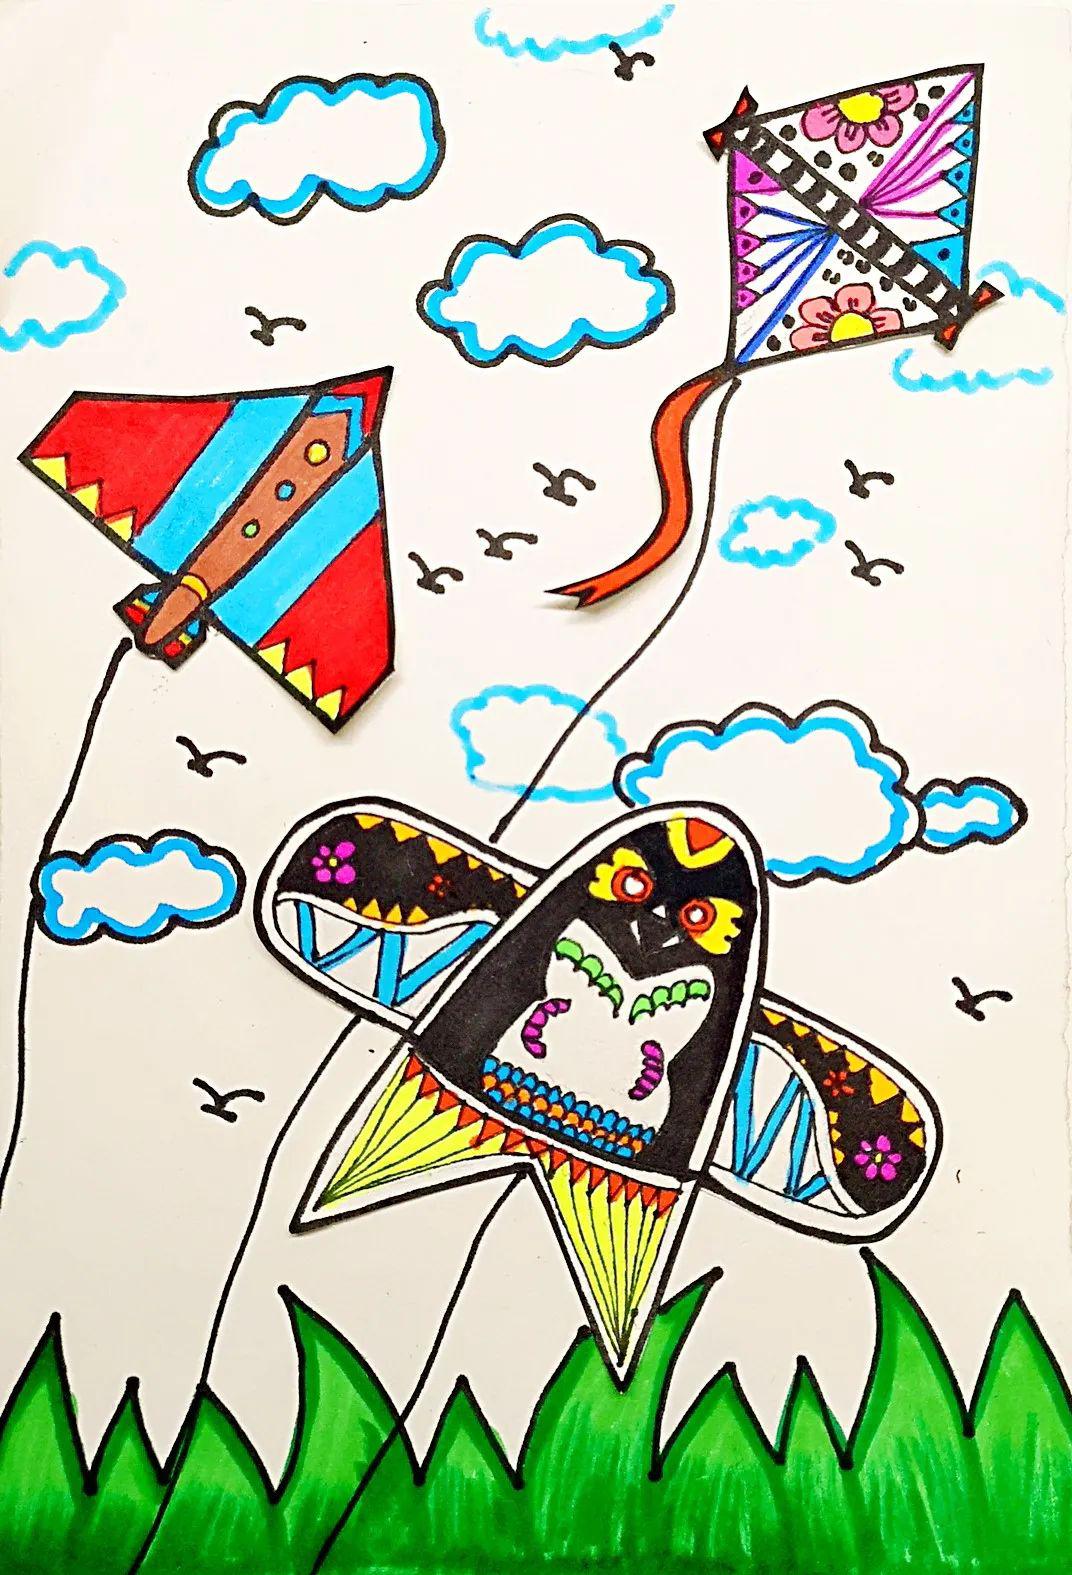 放风筝的图片简笔画 放风筝的图片简笔画卡通 - 水彩迷